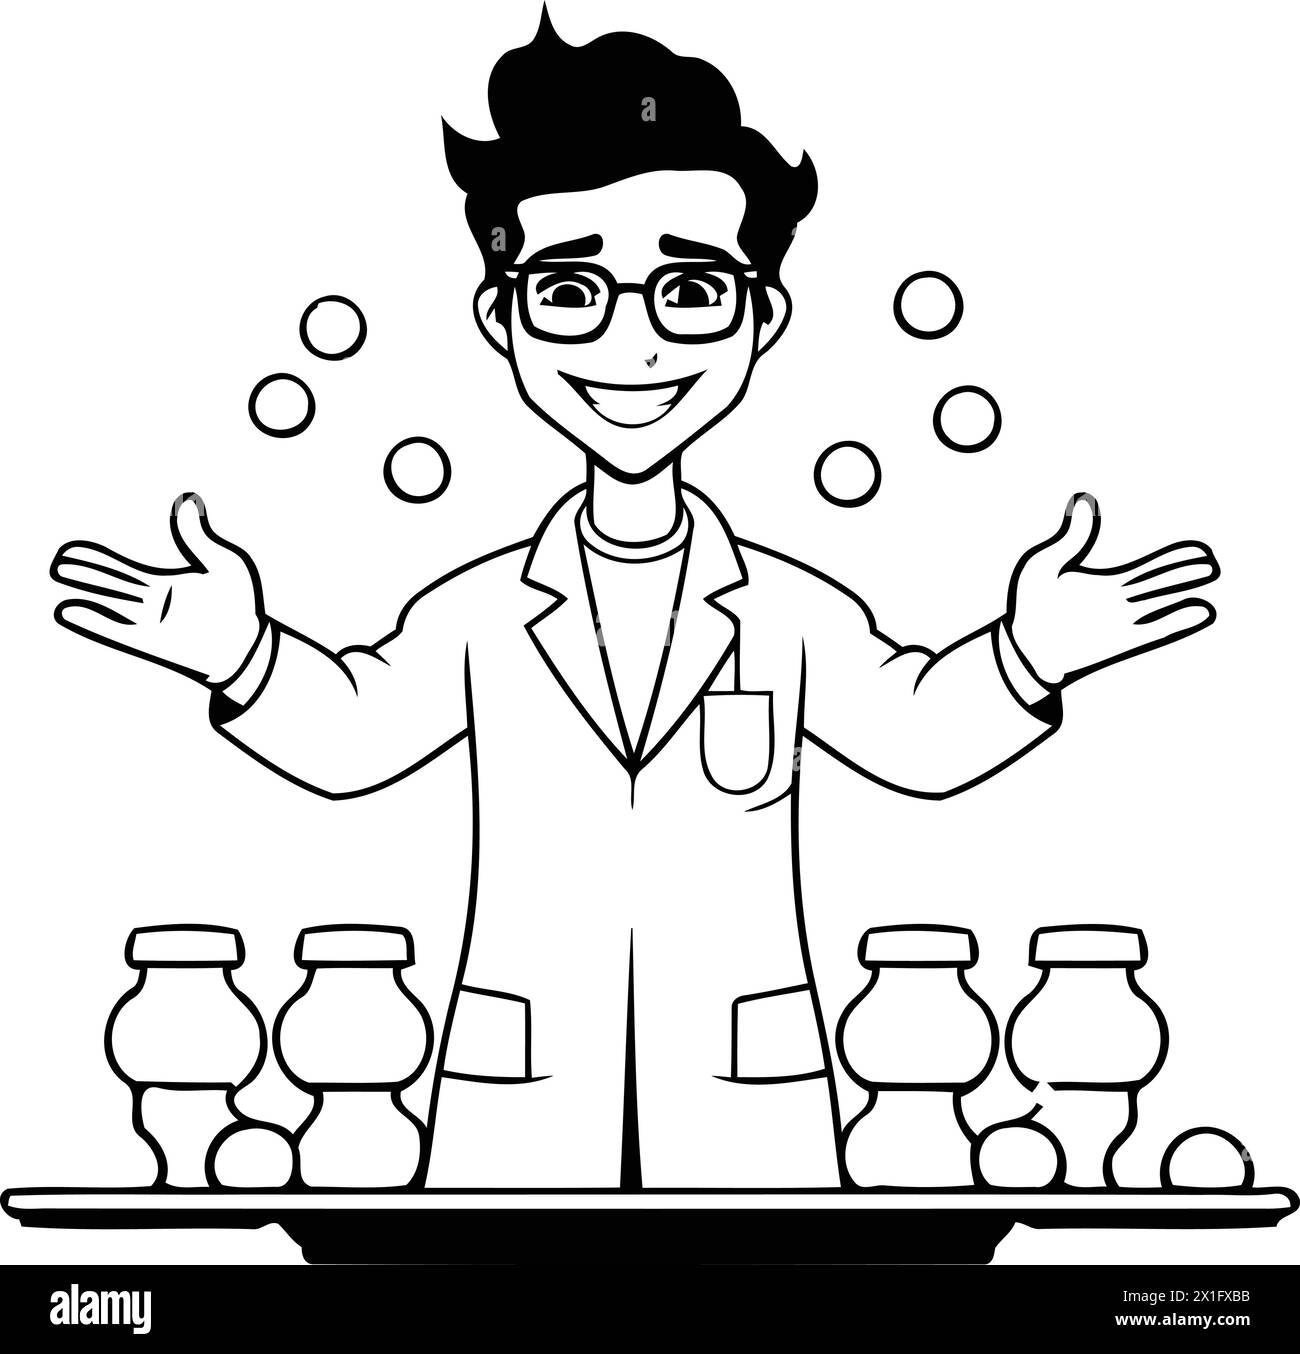 Illustration eines lächelnden Wissenschaftlers in einem Labormantel, der ein Glas voller Kirschtomaten hält. Stock Vektor